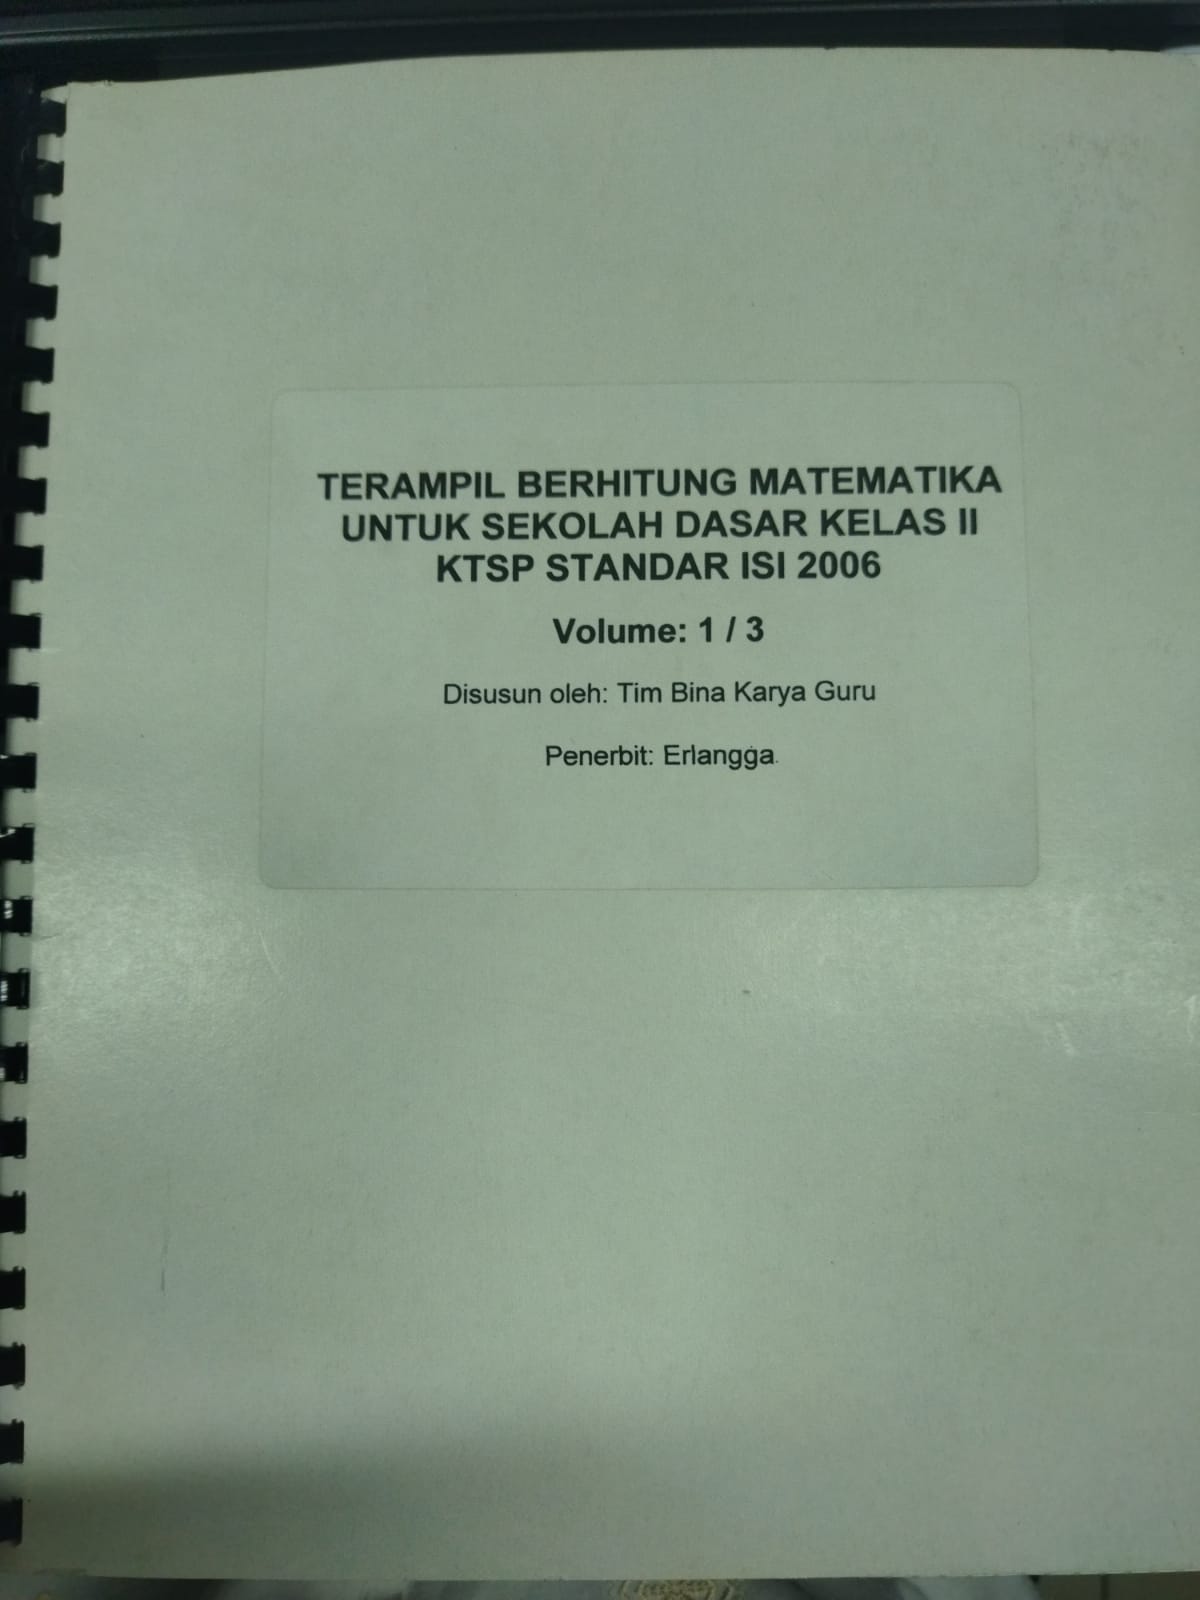 Terampil berhitung matematika untuk sekolah dasar kelas II KTSP standar isi 2006 volume 1/3